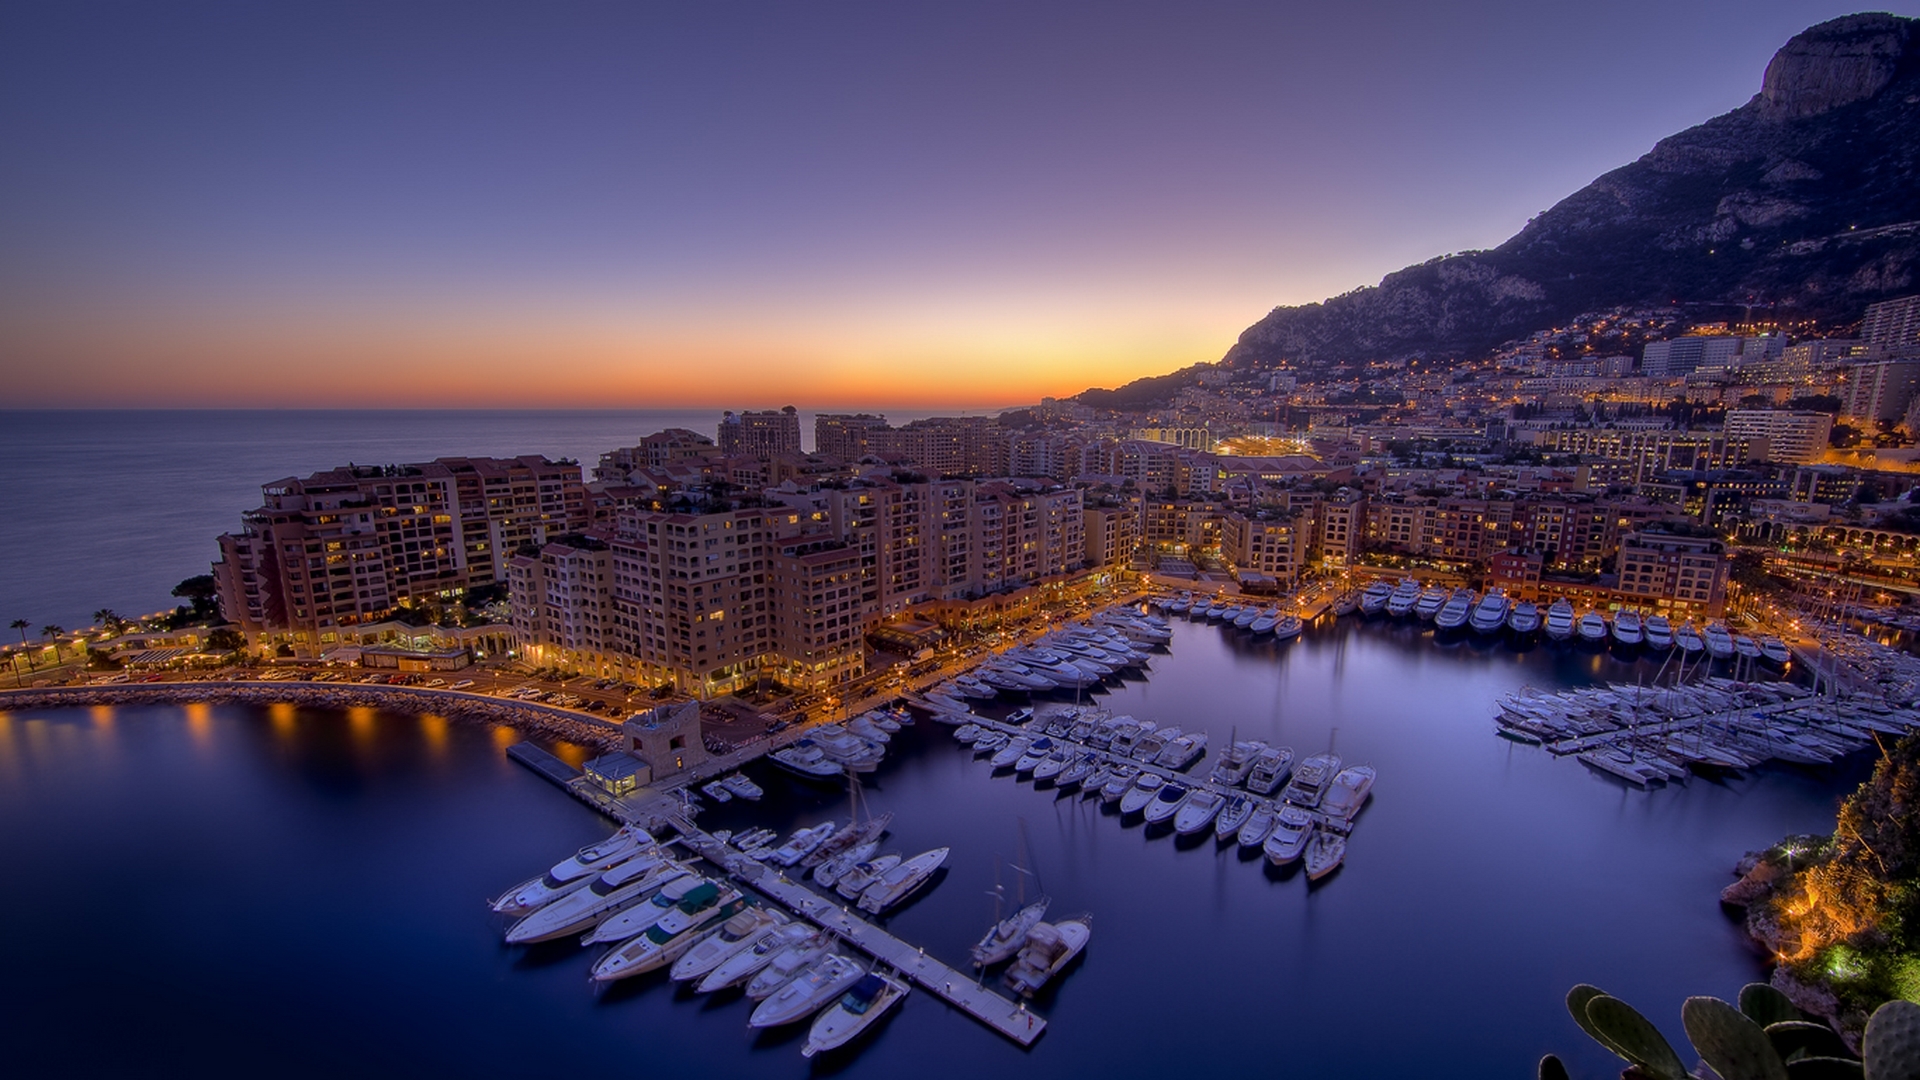 Monaco Picture